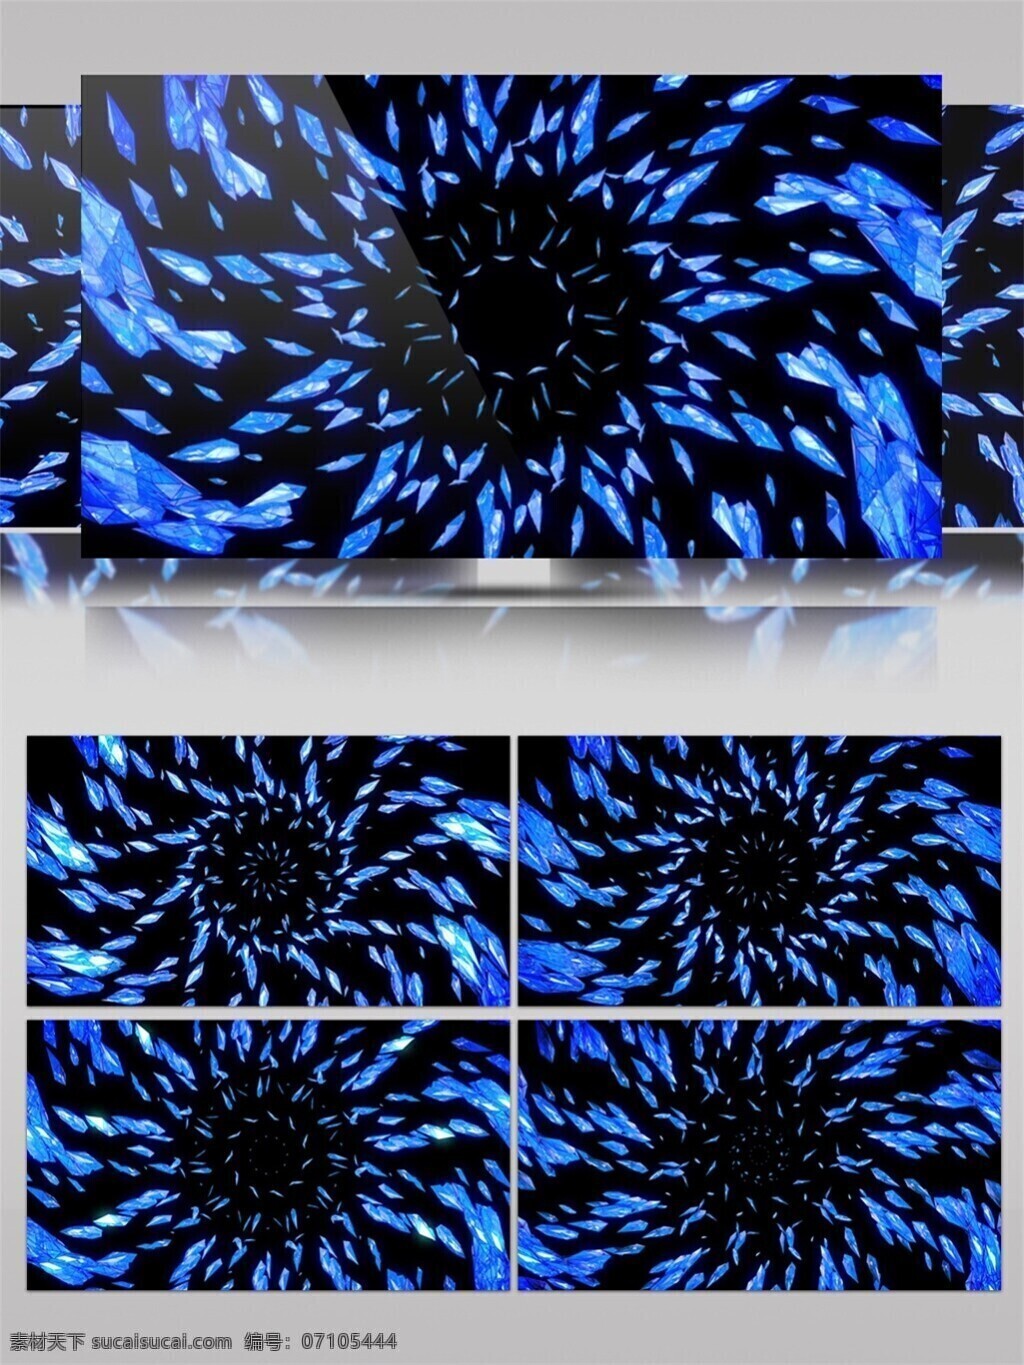 蓝光 水晶 旋涡 视频 光束 蓝色 激光 前进隧道 光芒穿梭 炫酷回旋